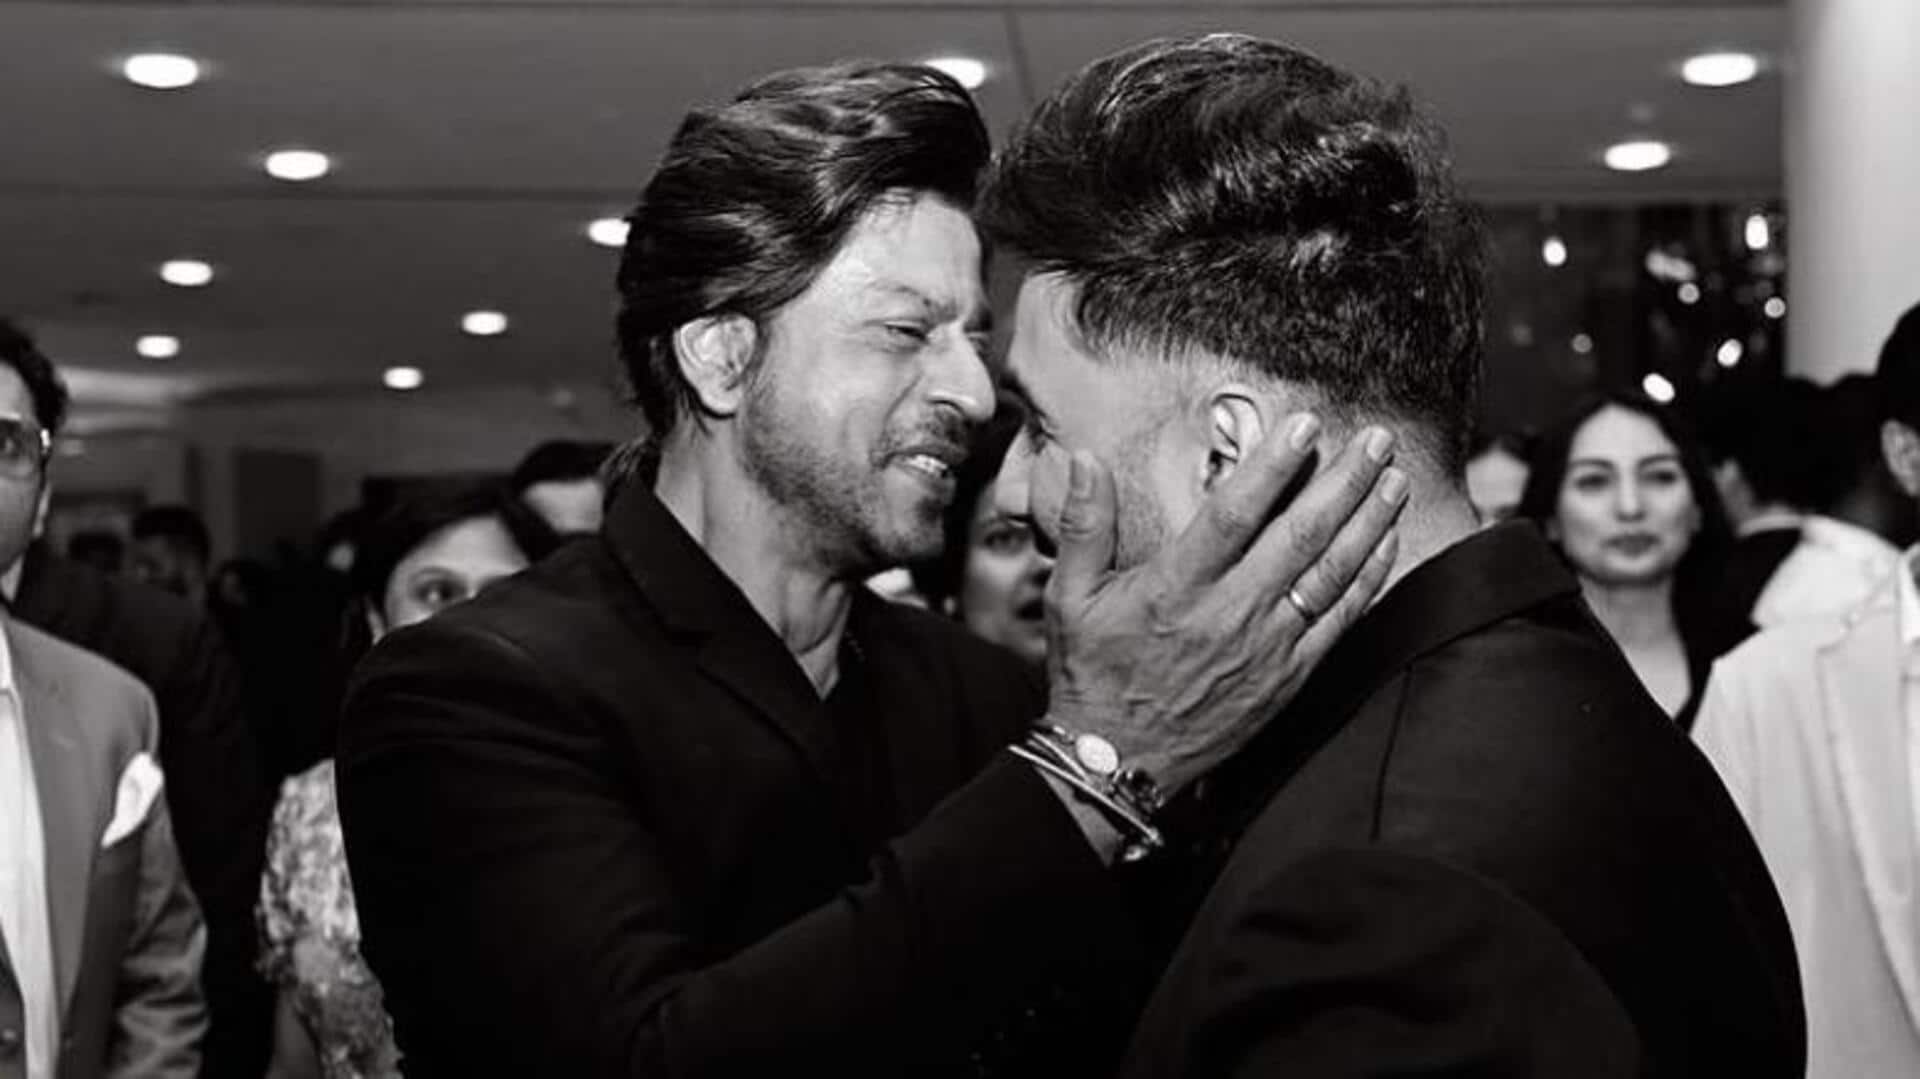 'Met the King': Vir Das on meeting Shah Rukh Khan